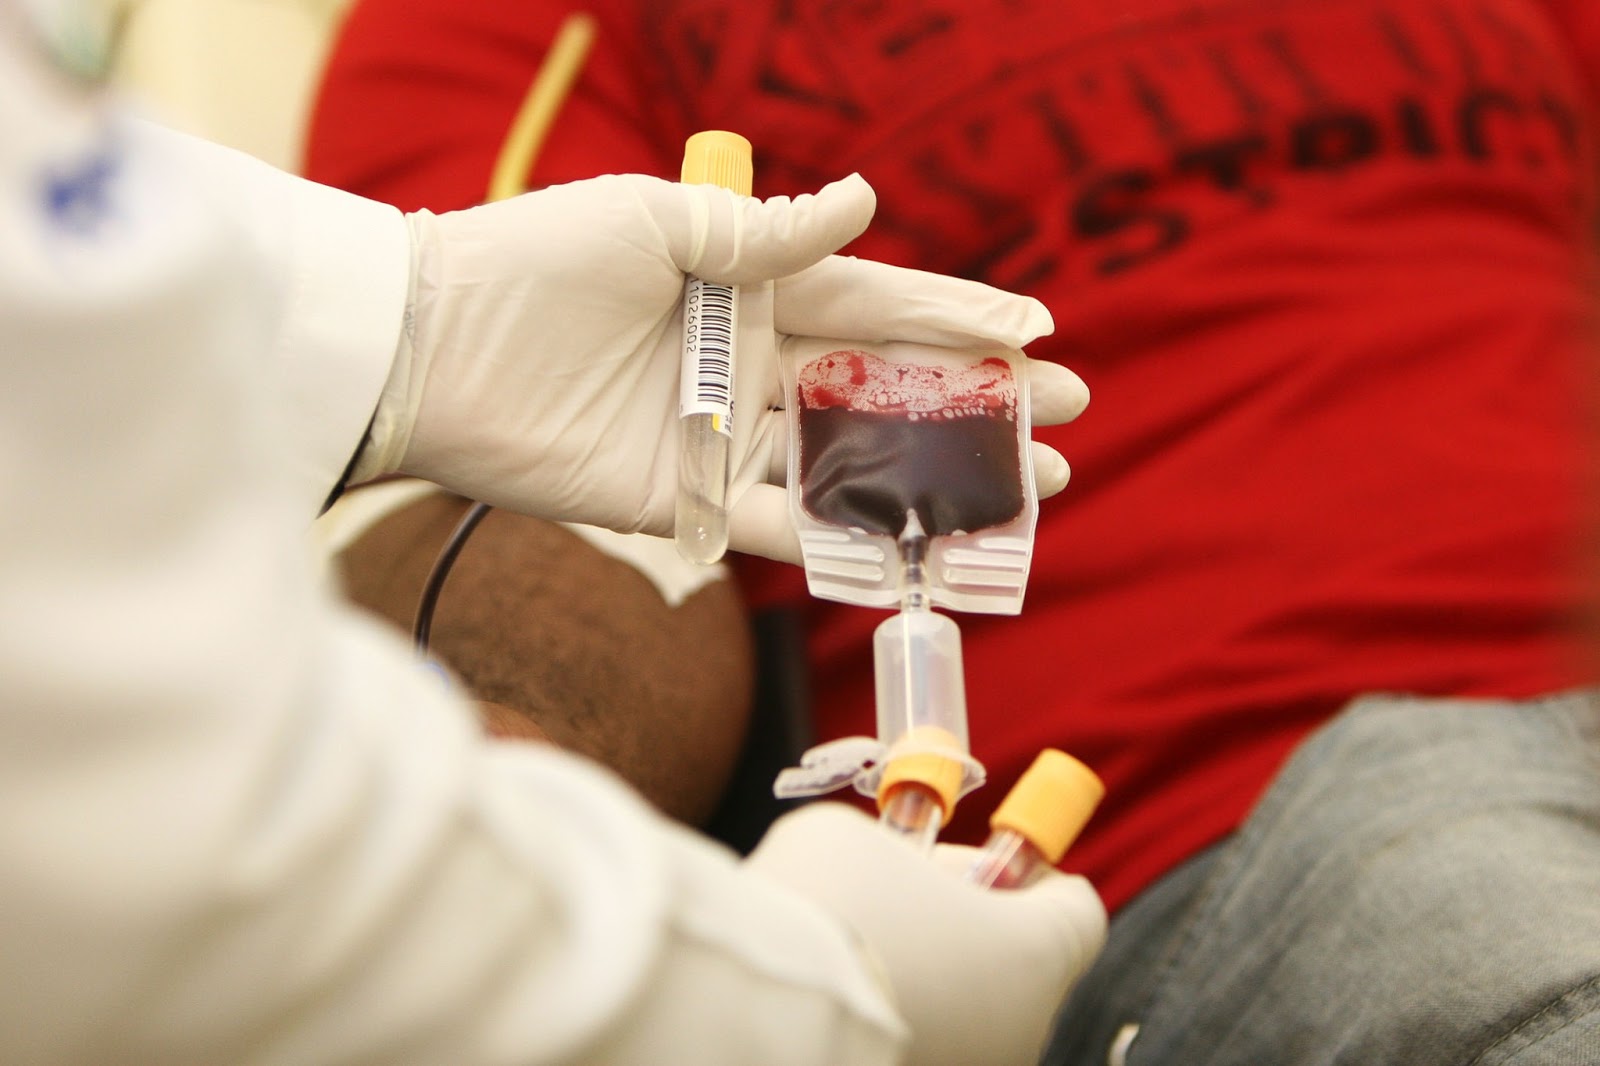 Para doar sangue precisa seguir alguns requisitos